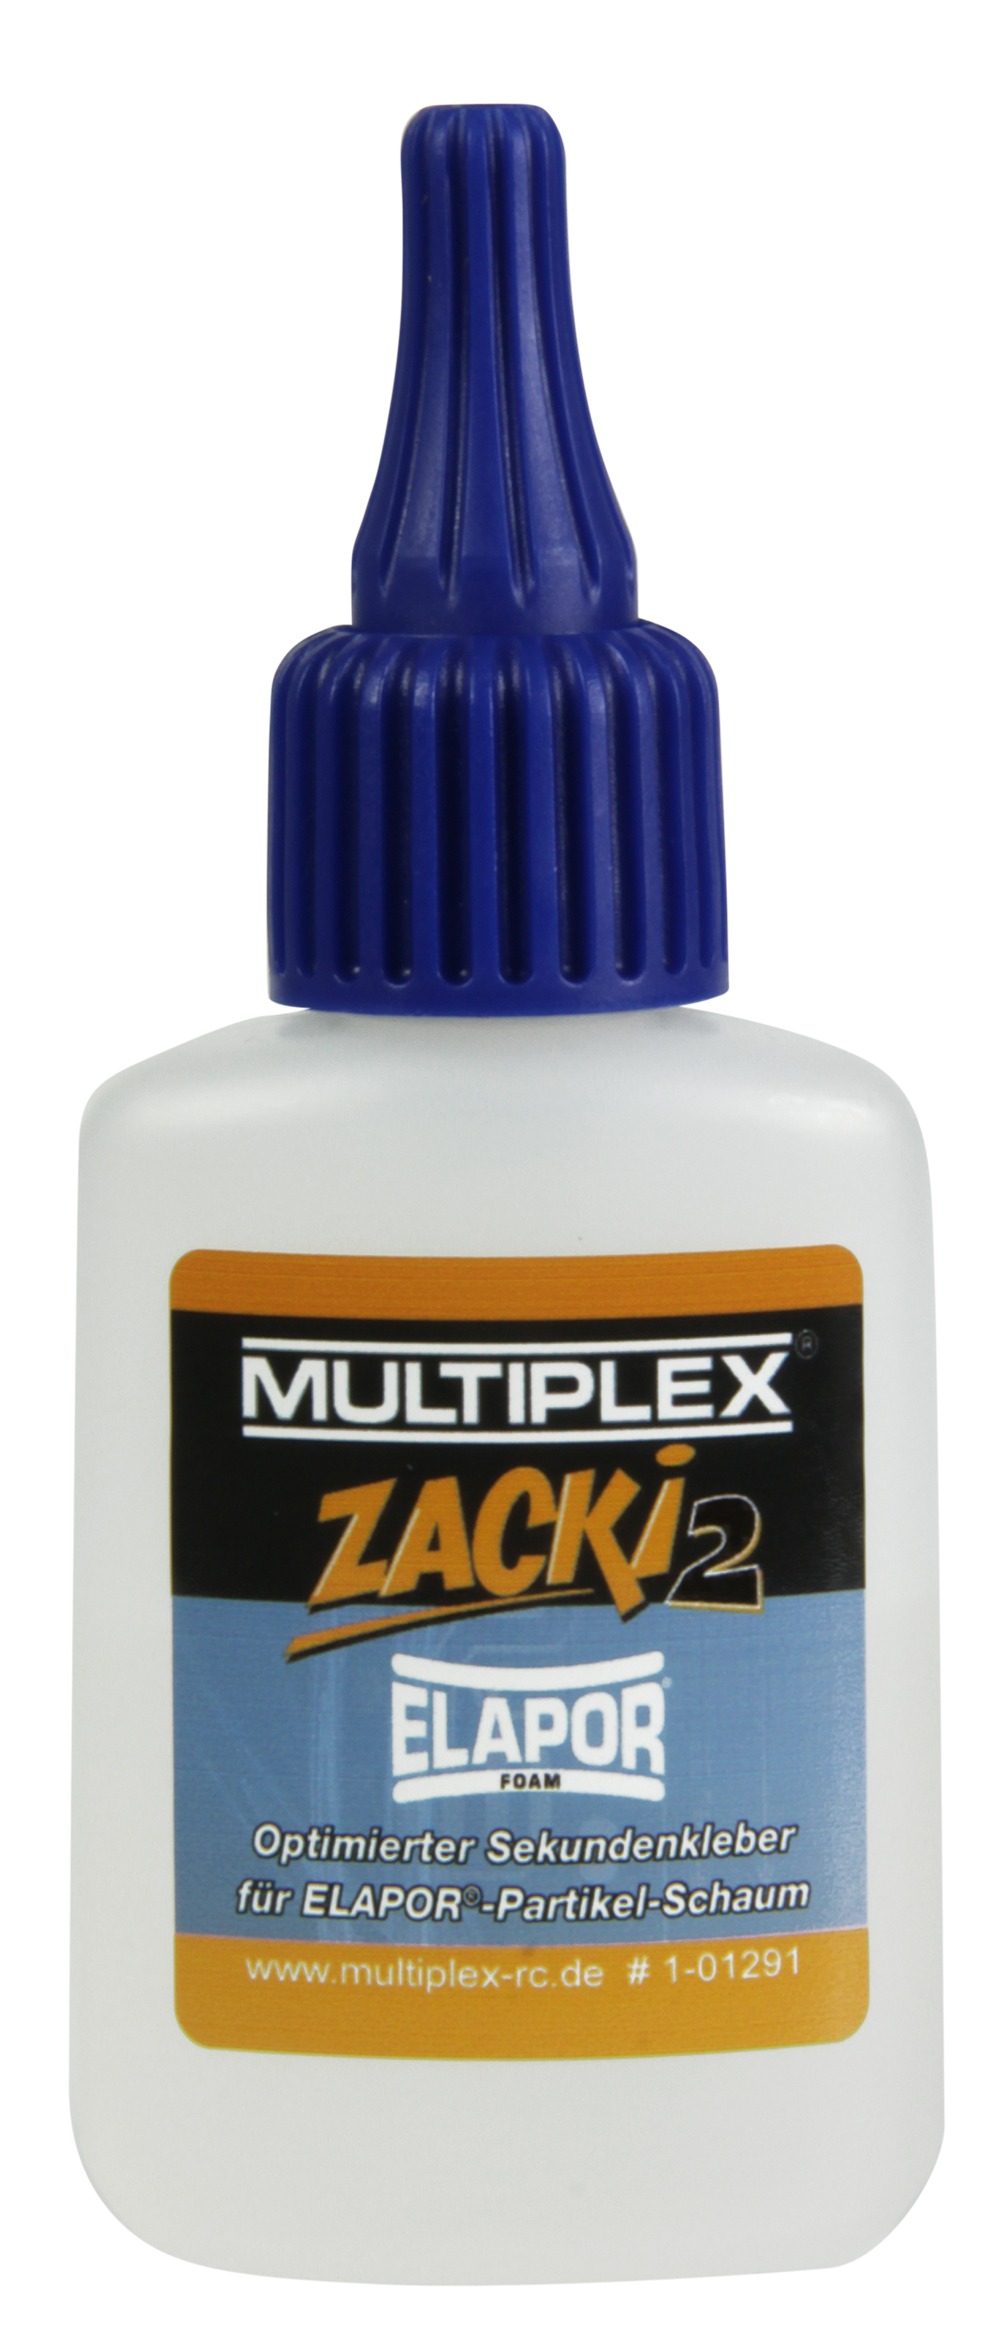 Multiplex Zacki2 ELAPOR 20g (Blister)